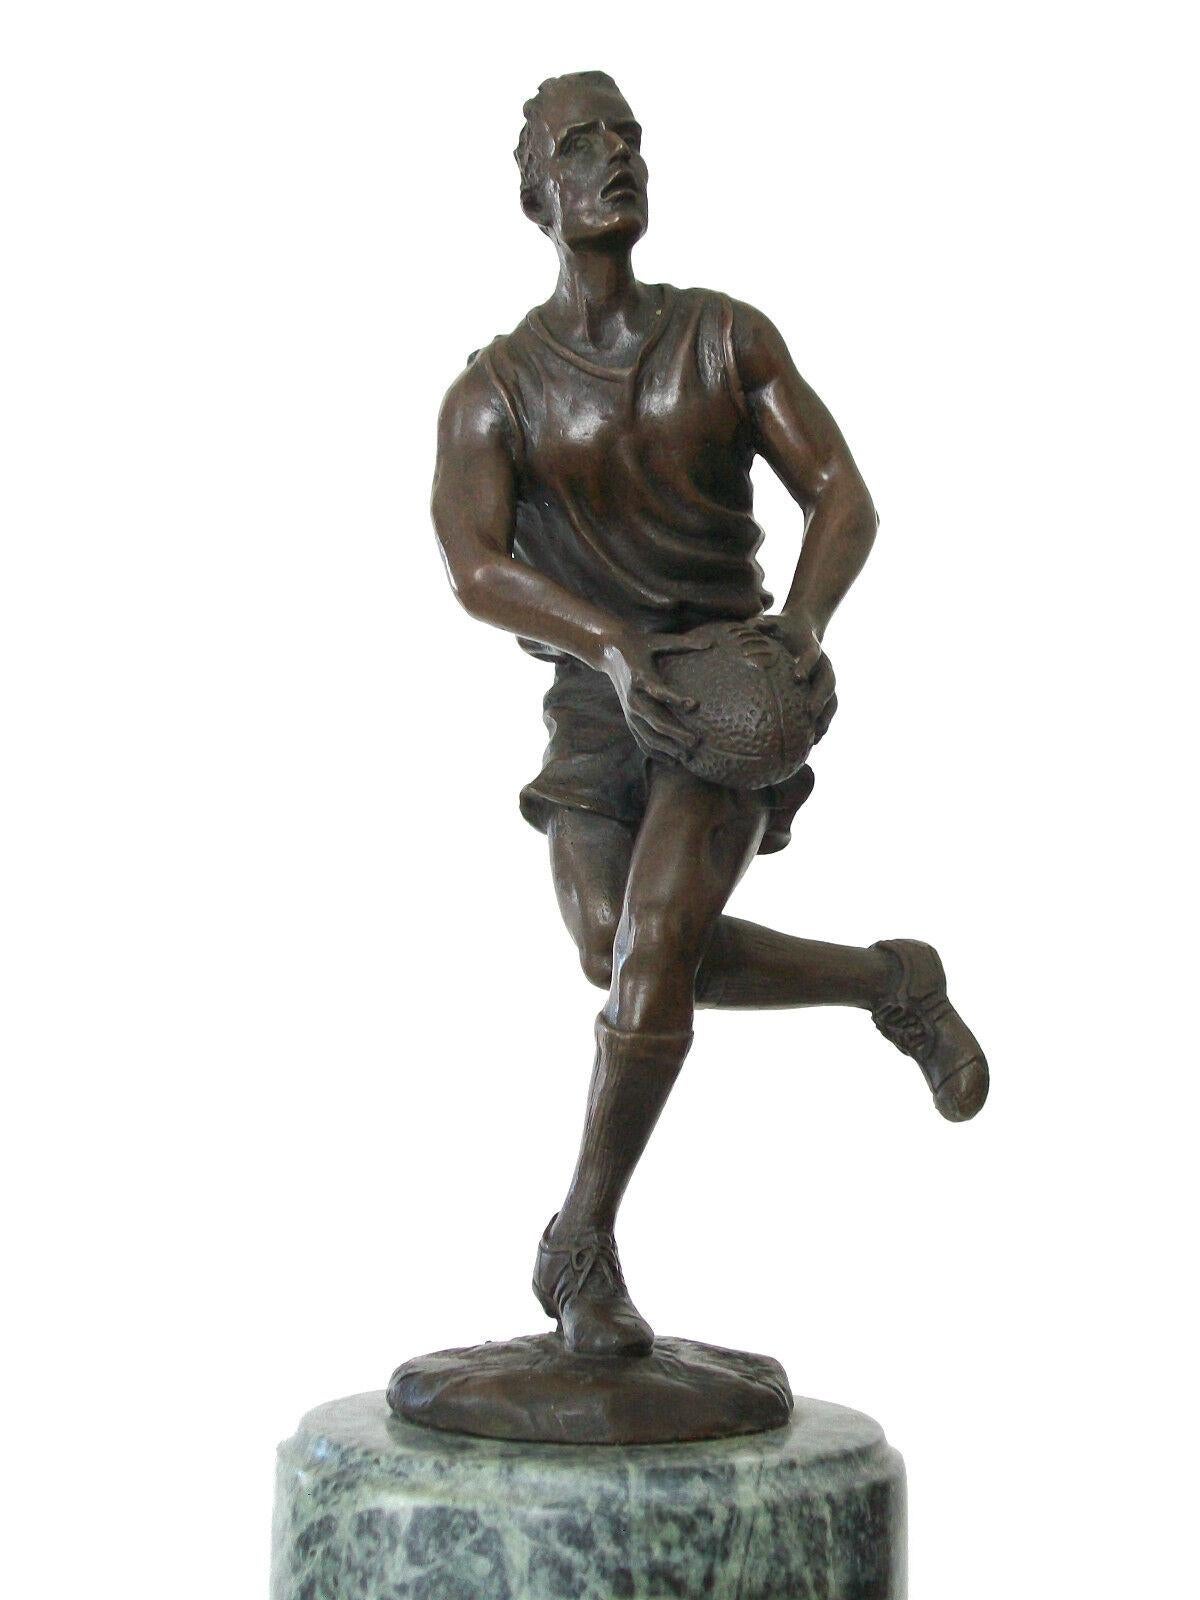 MIGUEL FERNANDO LOPEZ (MILO) - Vintage Rugbyspieler Bronzeskulptur auf Marmorsockel - signiert - Portugal - Ende 20. Jahrhundert.

Guter Vintage-Zustand - kein Verlust - keine Beschädigung - keine Restaurierung - kleine Oberflächenkratzer mit